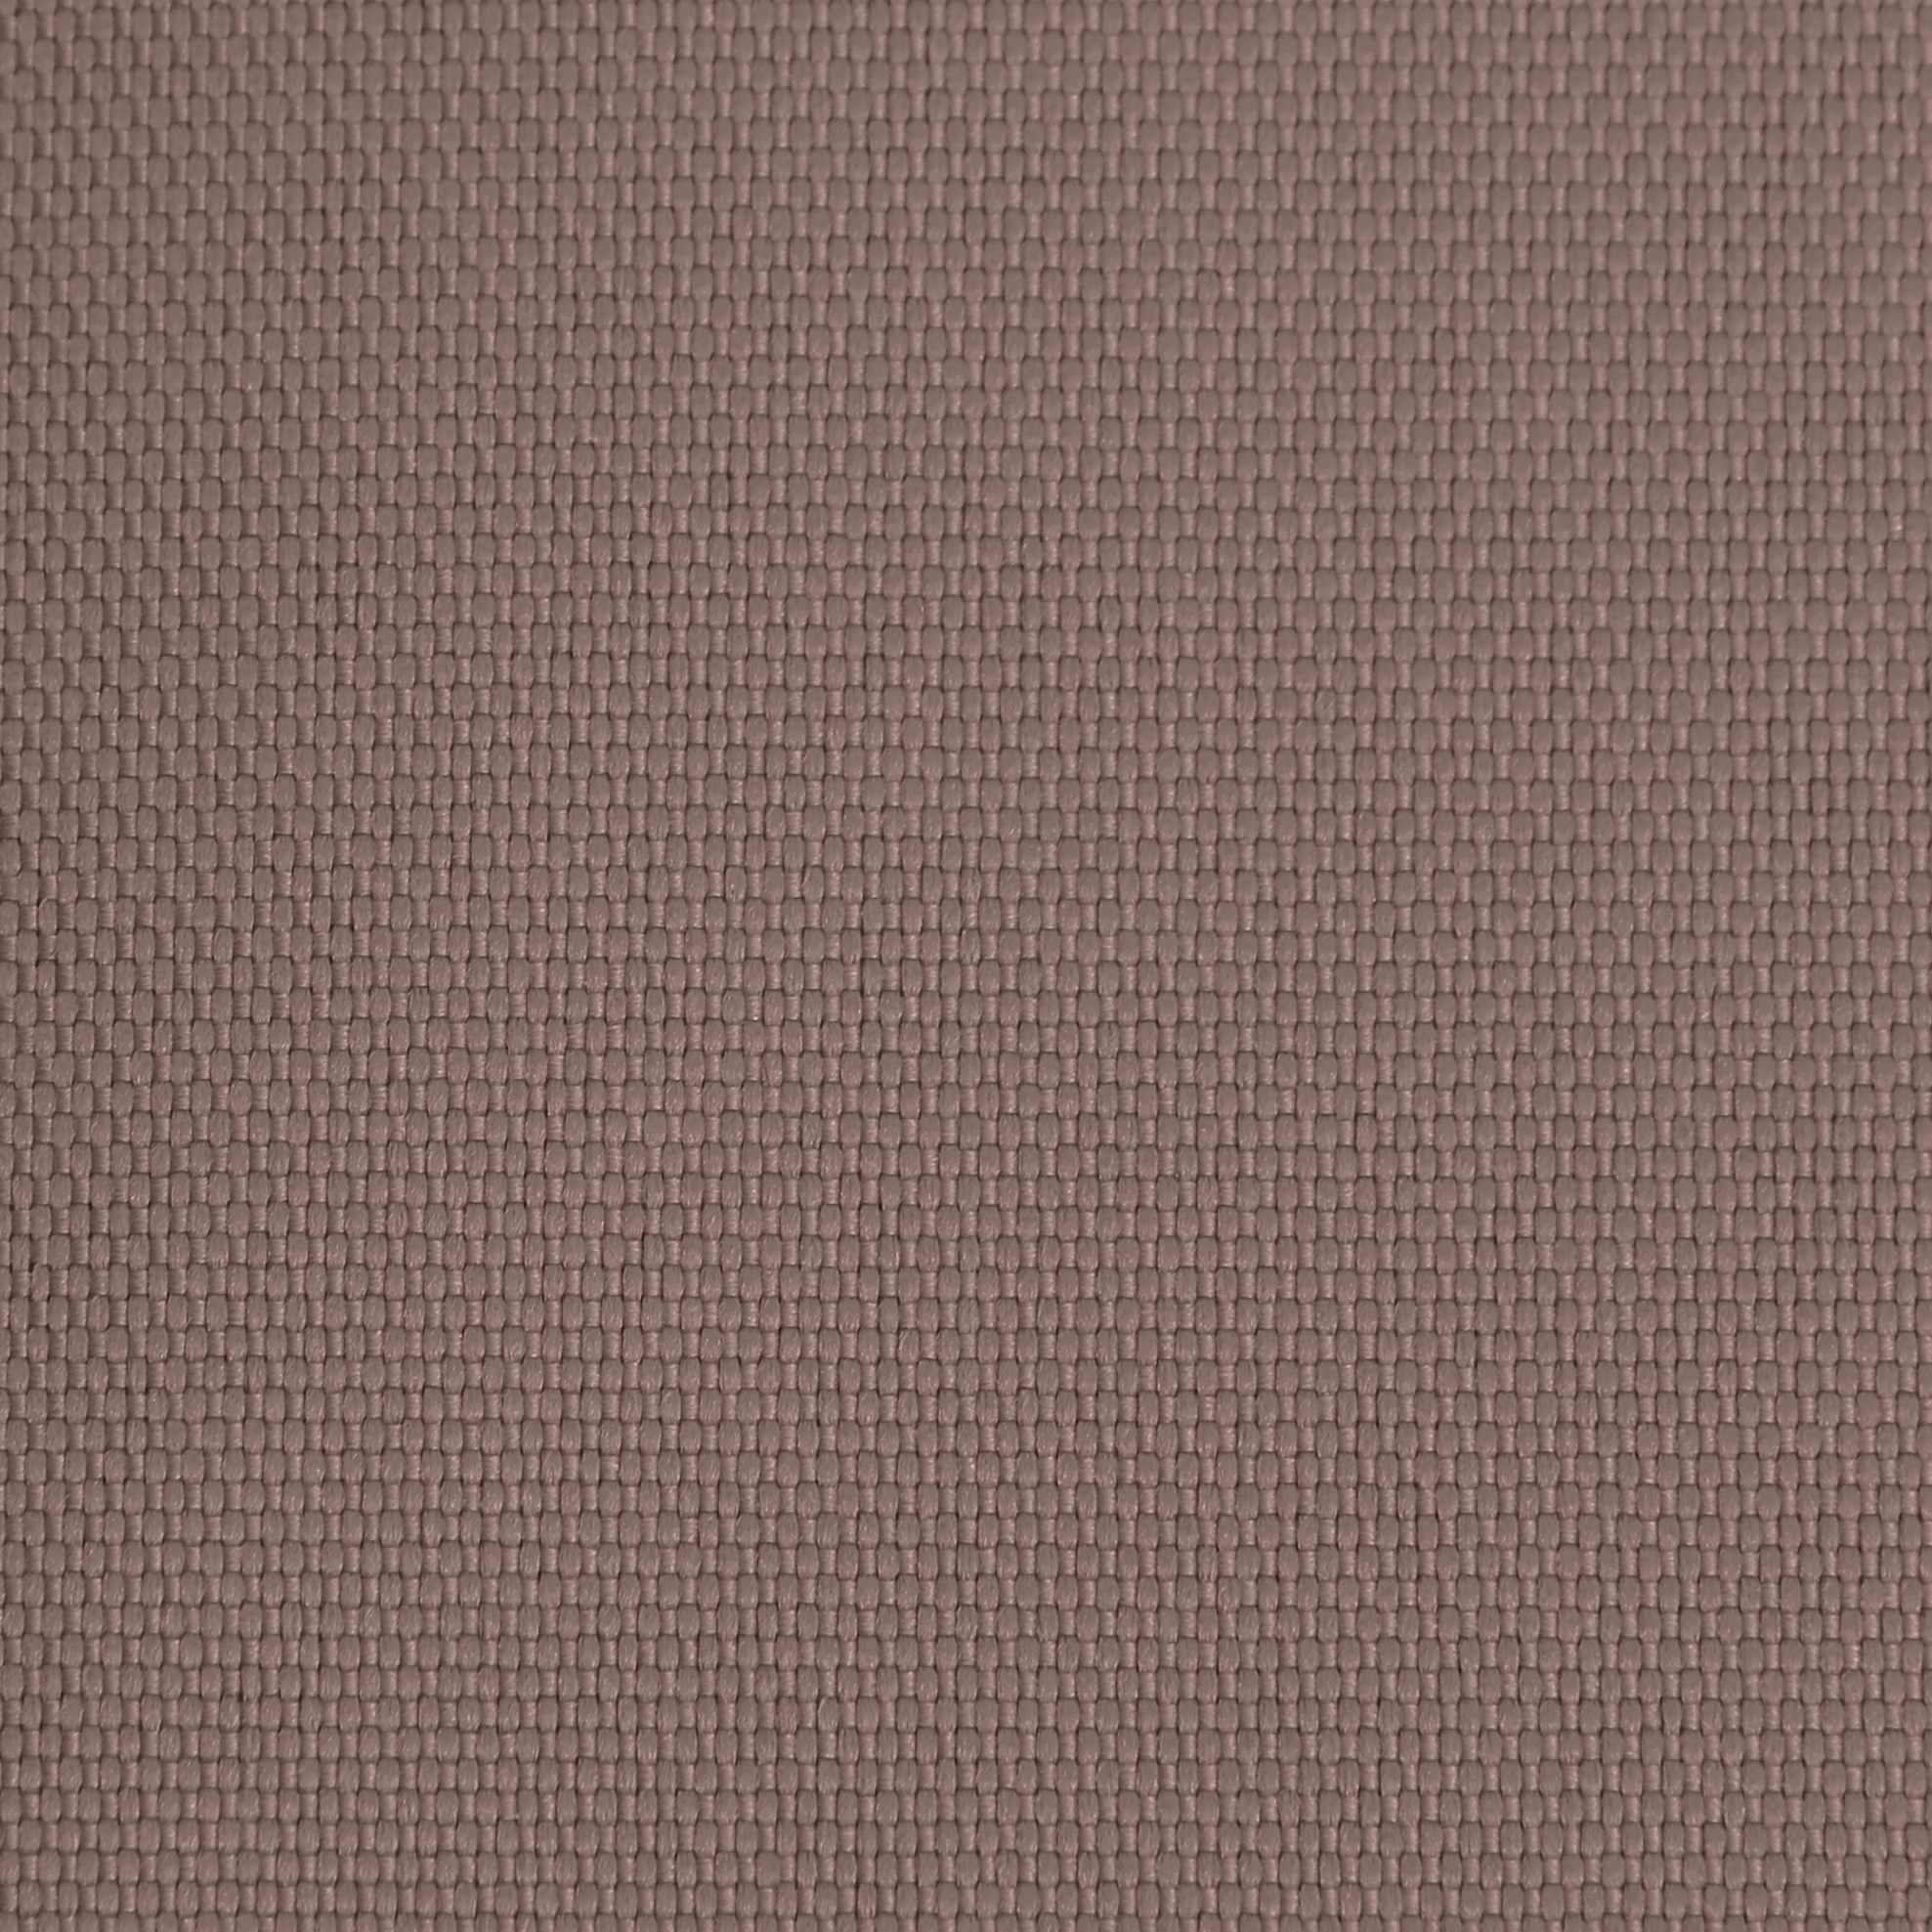 Ткань Оксфорд 600D размер 4м*1,5м арт. цвет 600400670 коричневый